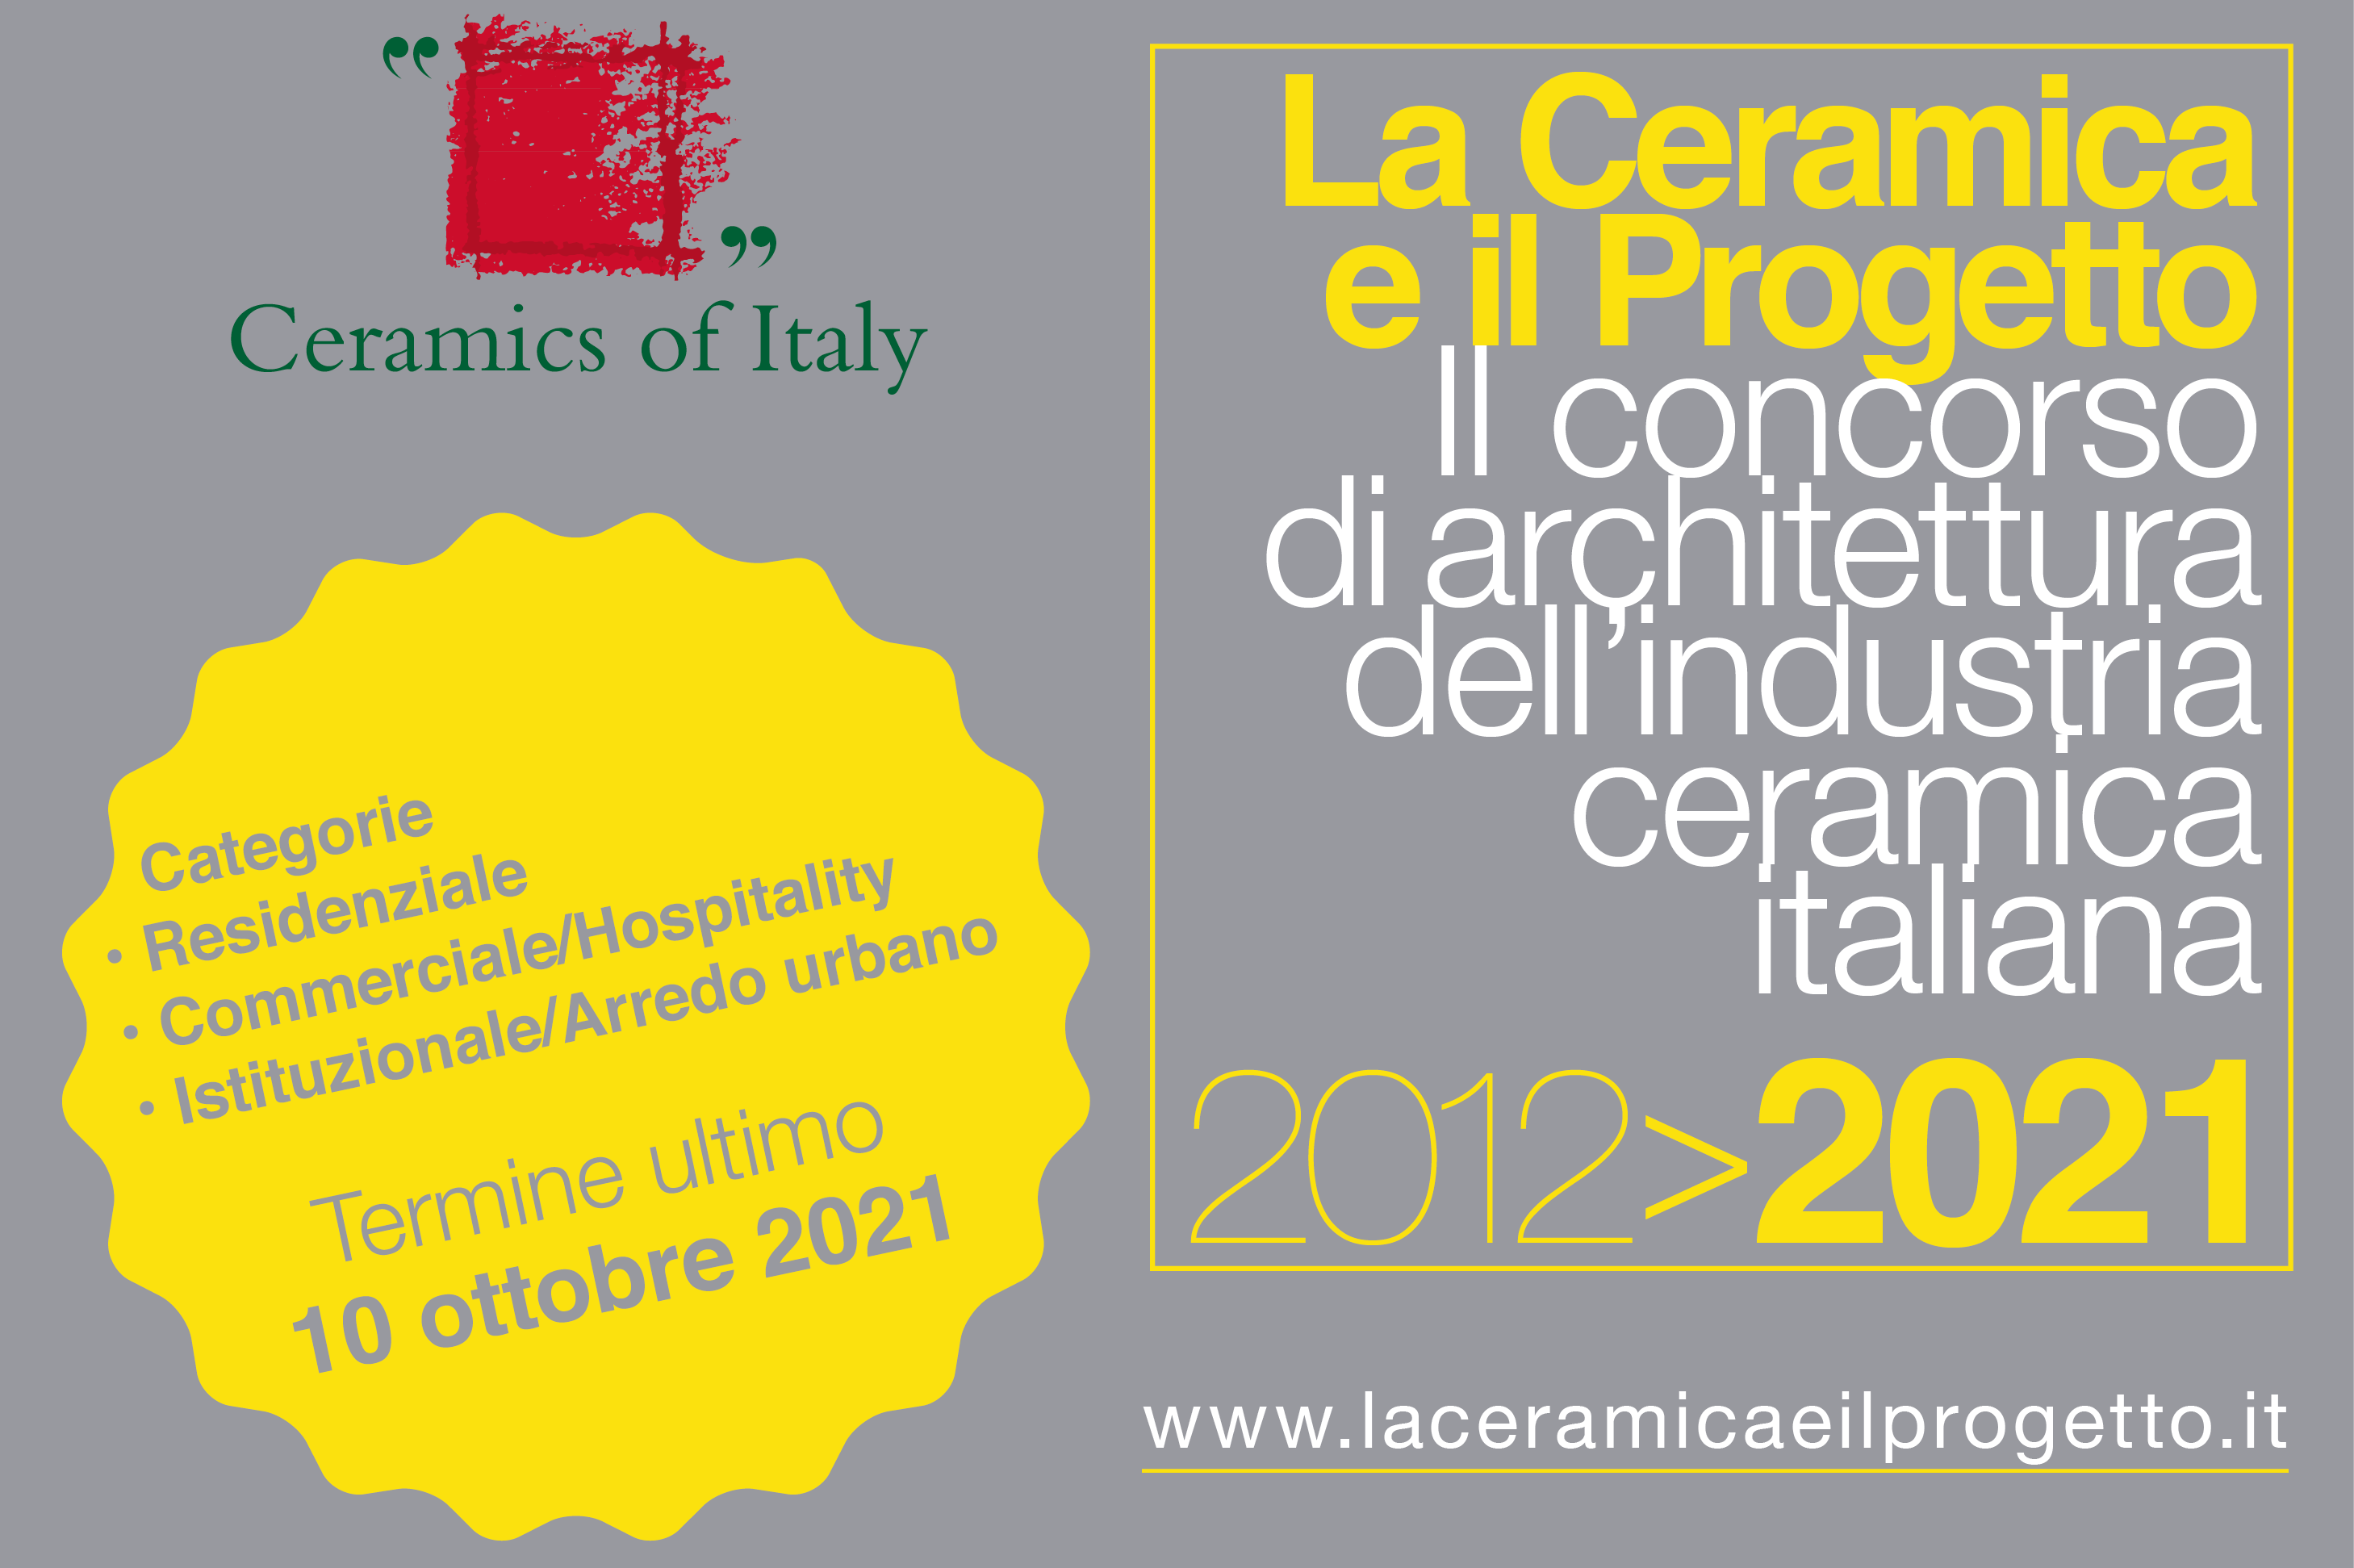 La Ceramica e il Progetto 2021